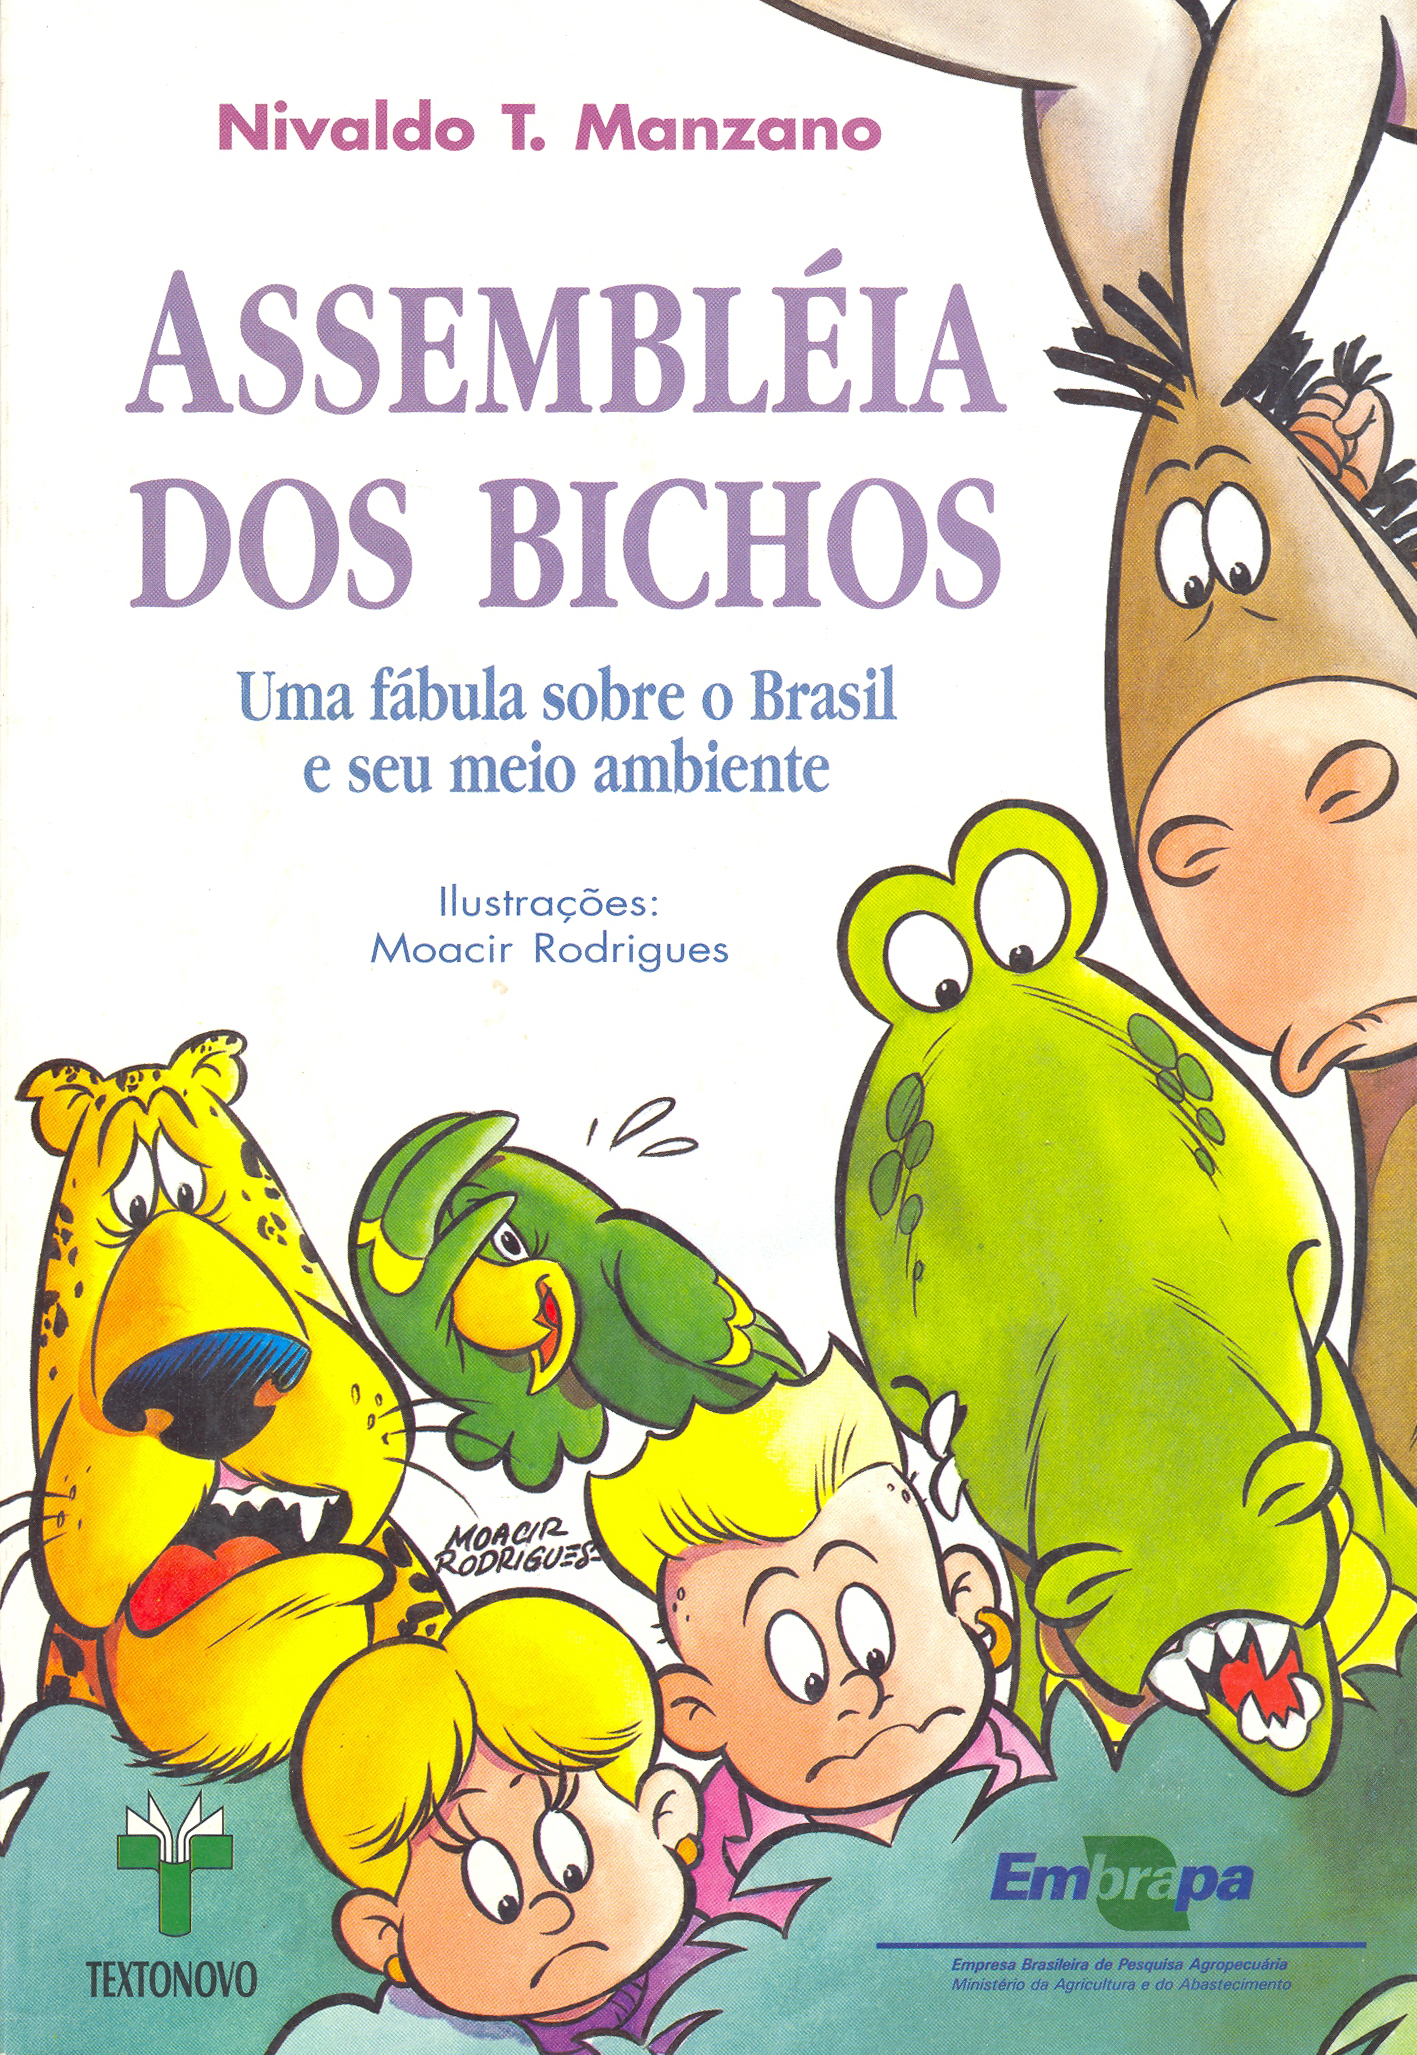 Capa do livro infantojuvenil Assembleia dos Bichos